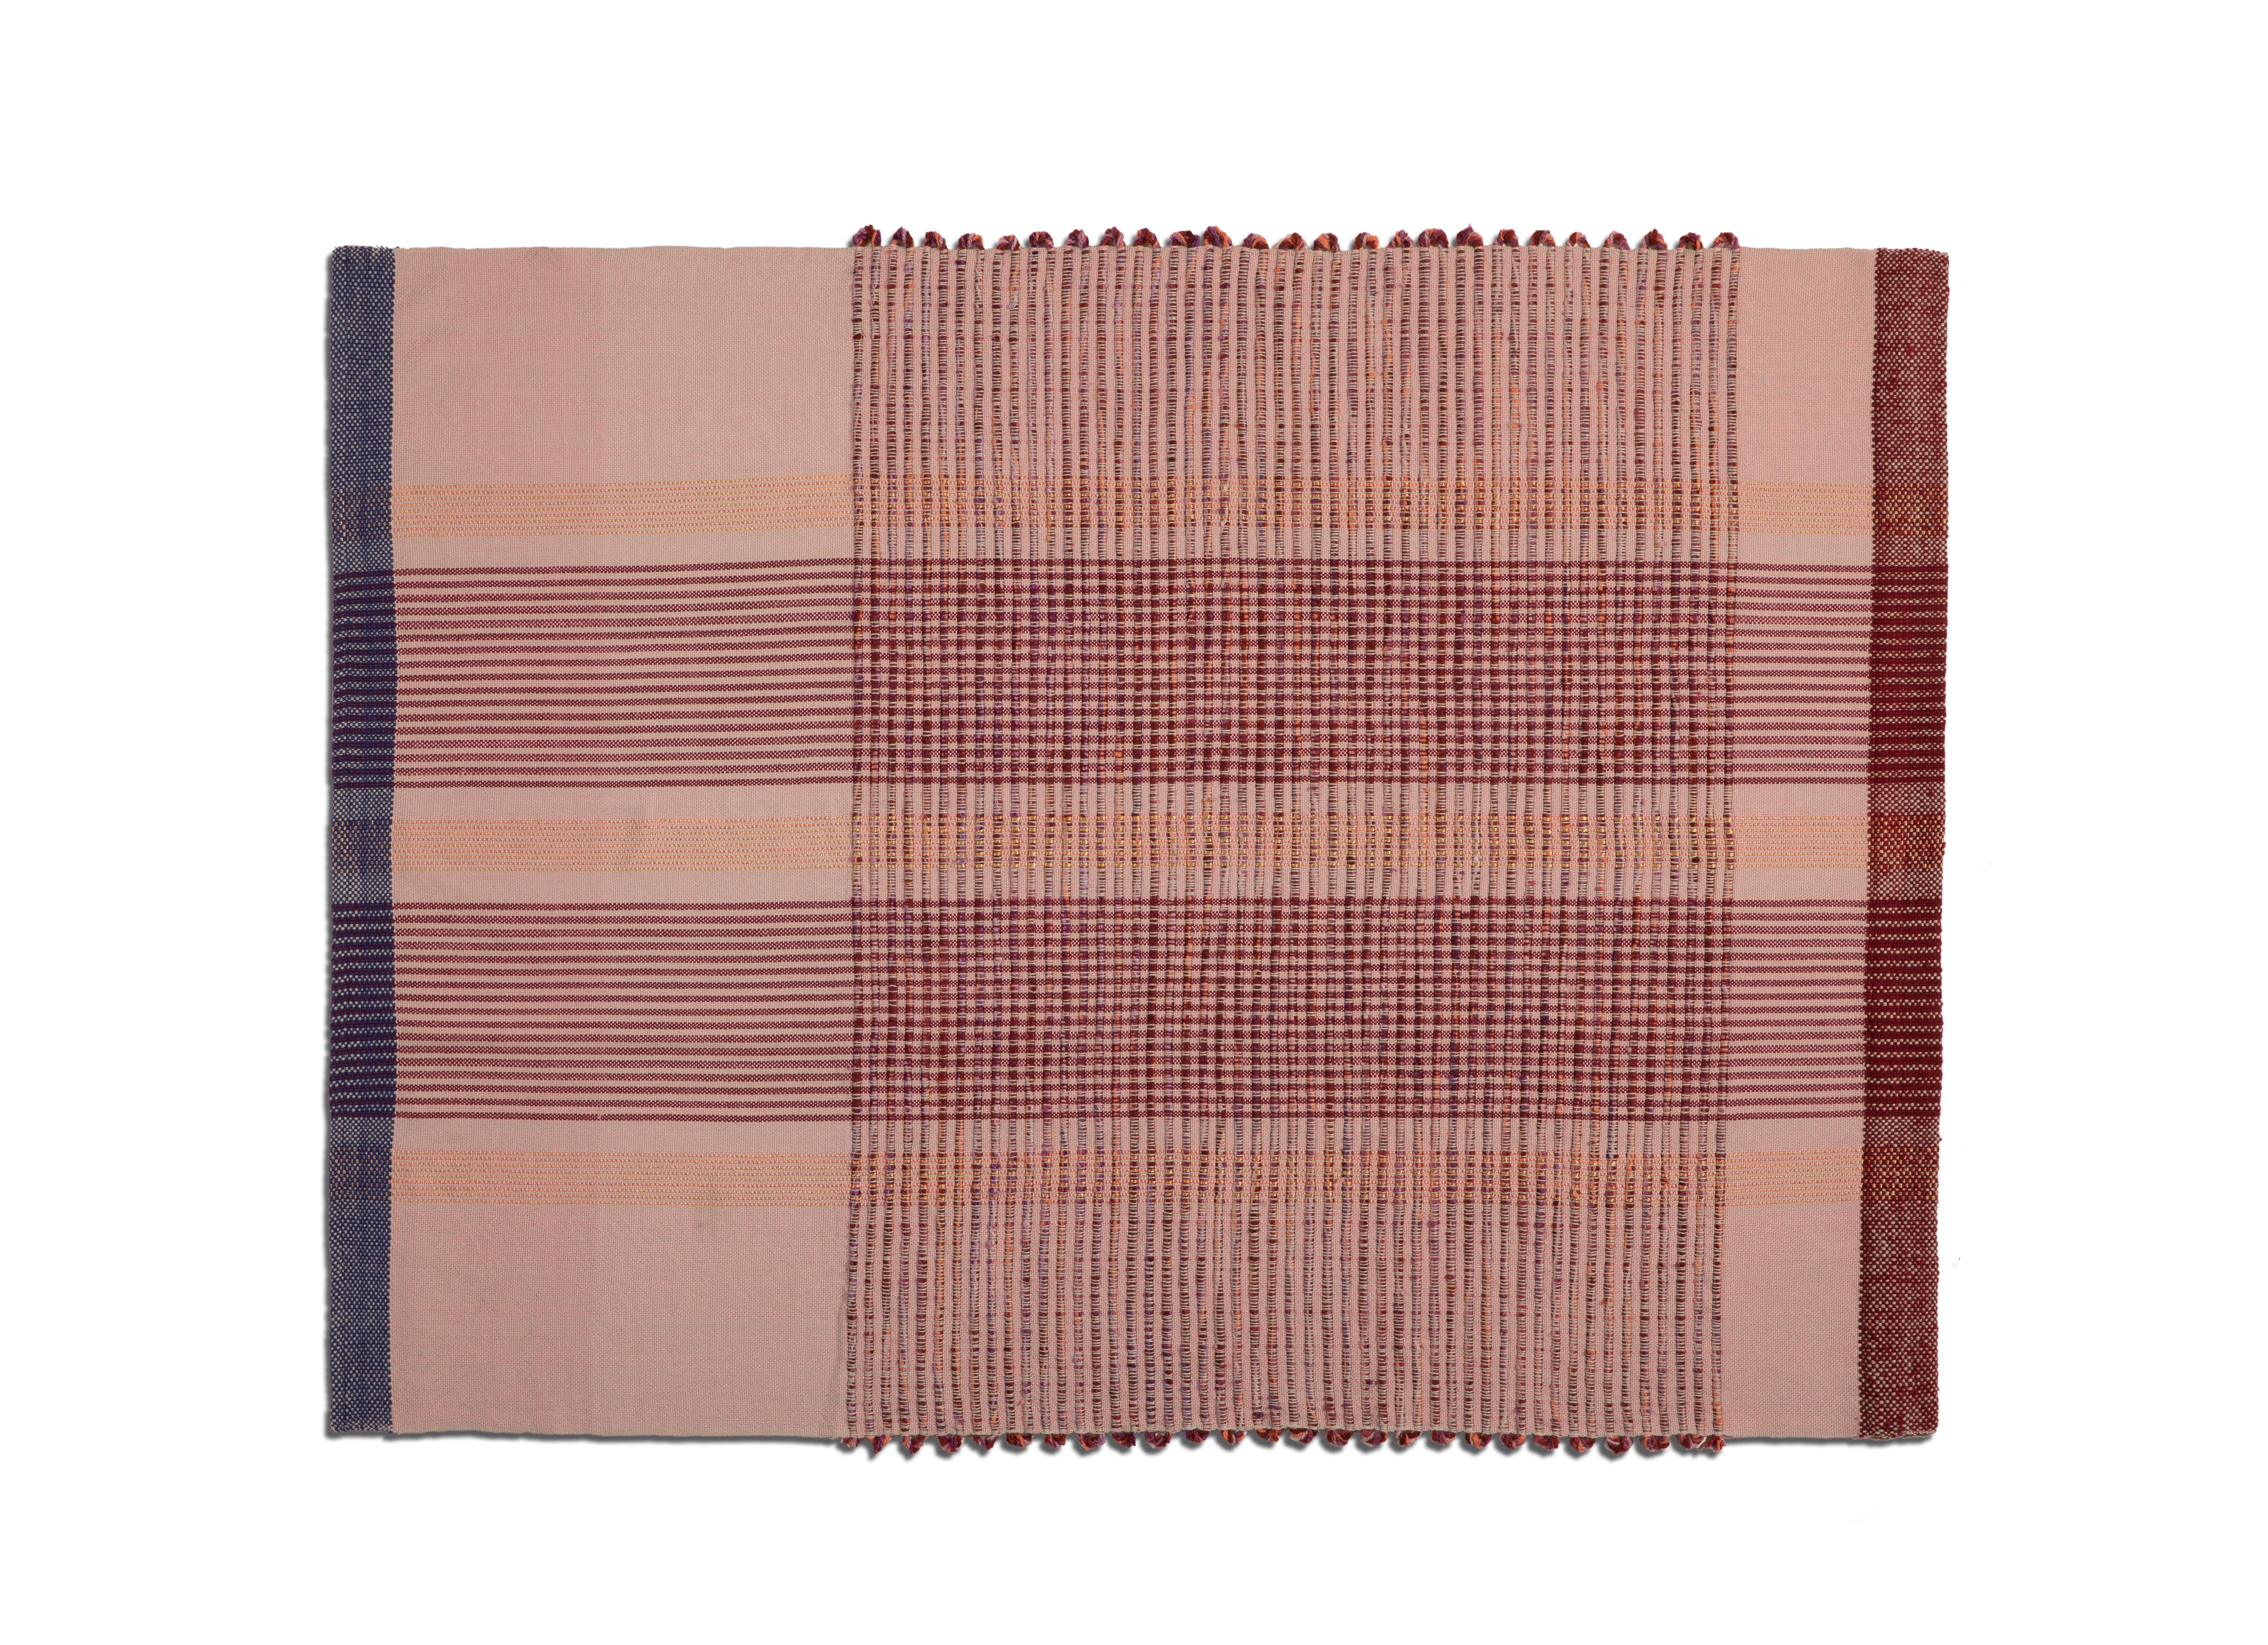 Kaugummi-Decke 2 von Mae Engelgeer
MATERIALIEN: 100% Baumwolle. 
Technik: Handgewebt in Kolumbien. 
Abmessungen: B 130 x H 180 cm 
Erhältlich in den Farben: Blau/Banane/Silber und Terrakotta/Lavendel/Gold. 

Die Chumbes-Decke ist ein kuscheliges